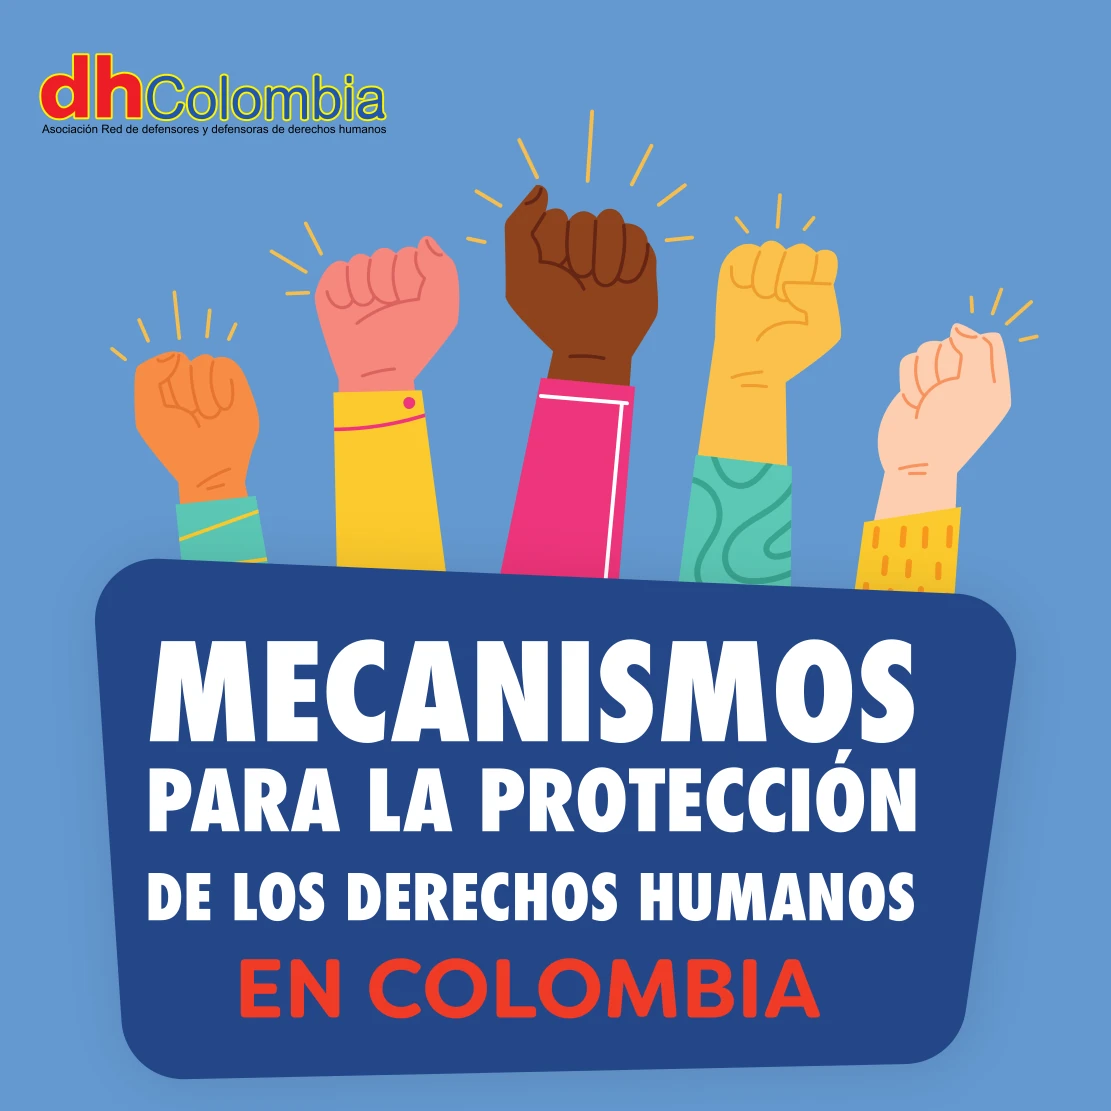 dhColombia Marco jurídico de protección de derechos humanos 3. 01 mecanismos de proteccion de ddhh